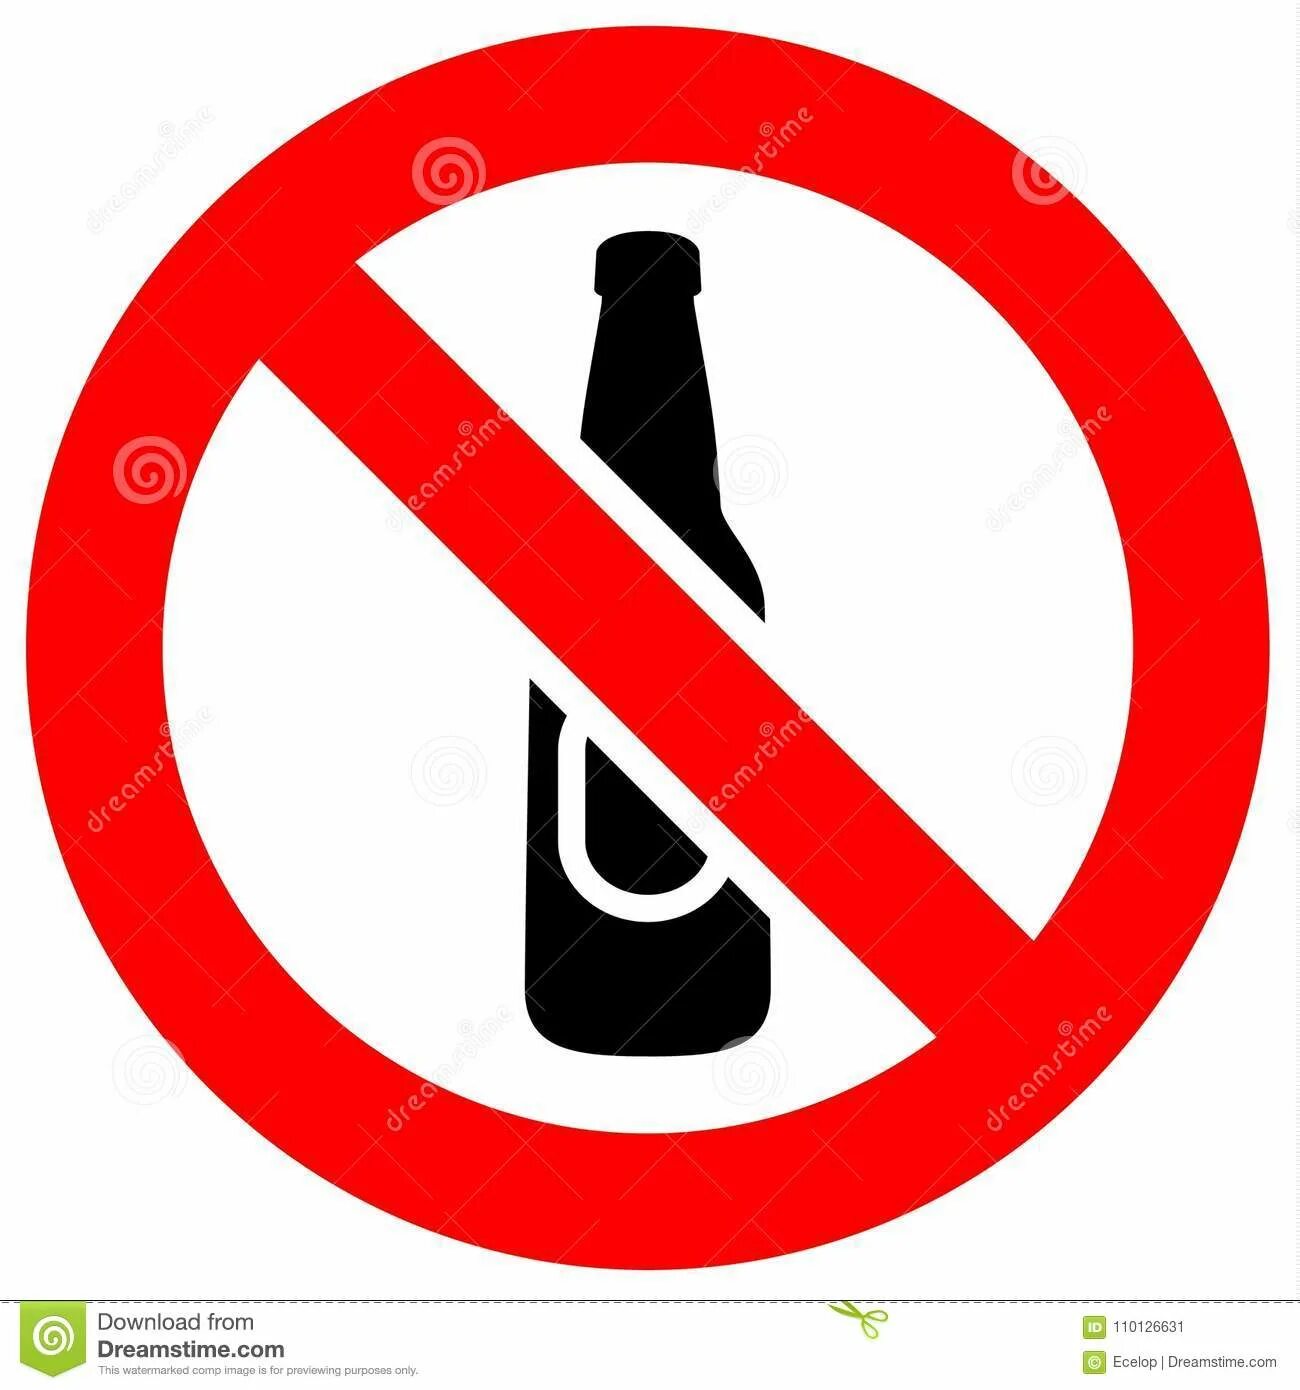 Знак алкоголь запрещен. Стекло запрещено. Значок детям до 3 лет запрещено. Знак качели запрещено.